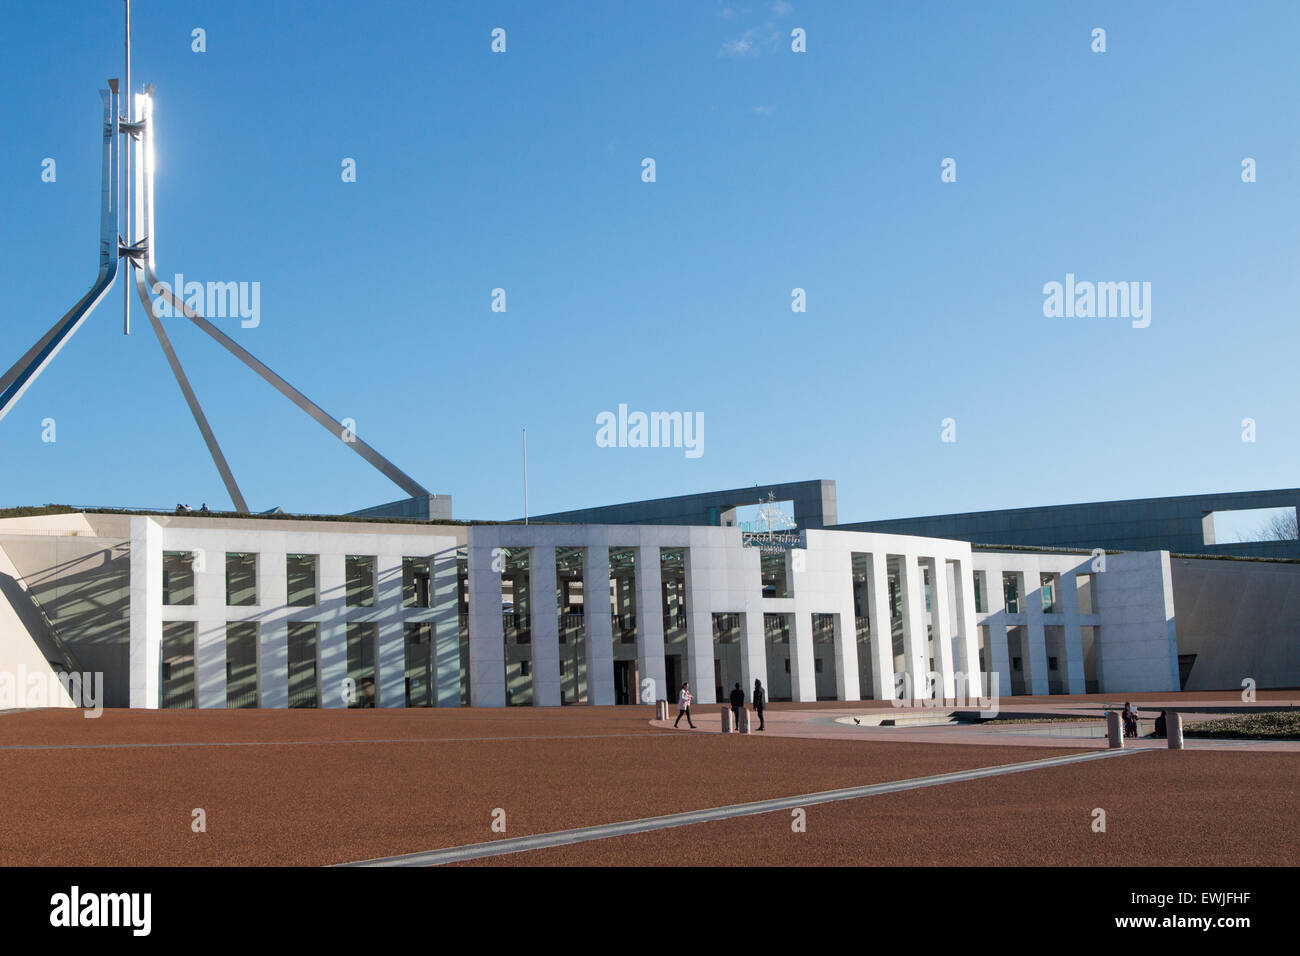 Vue du nouveau bâtiment de la Maison du parlement à Canberra, la capitale de l'Australie, sous le soleil d'hivers,jour,la Loi sur l'Australie Banque D'Images